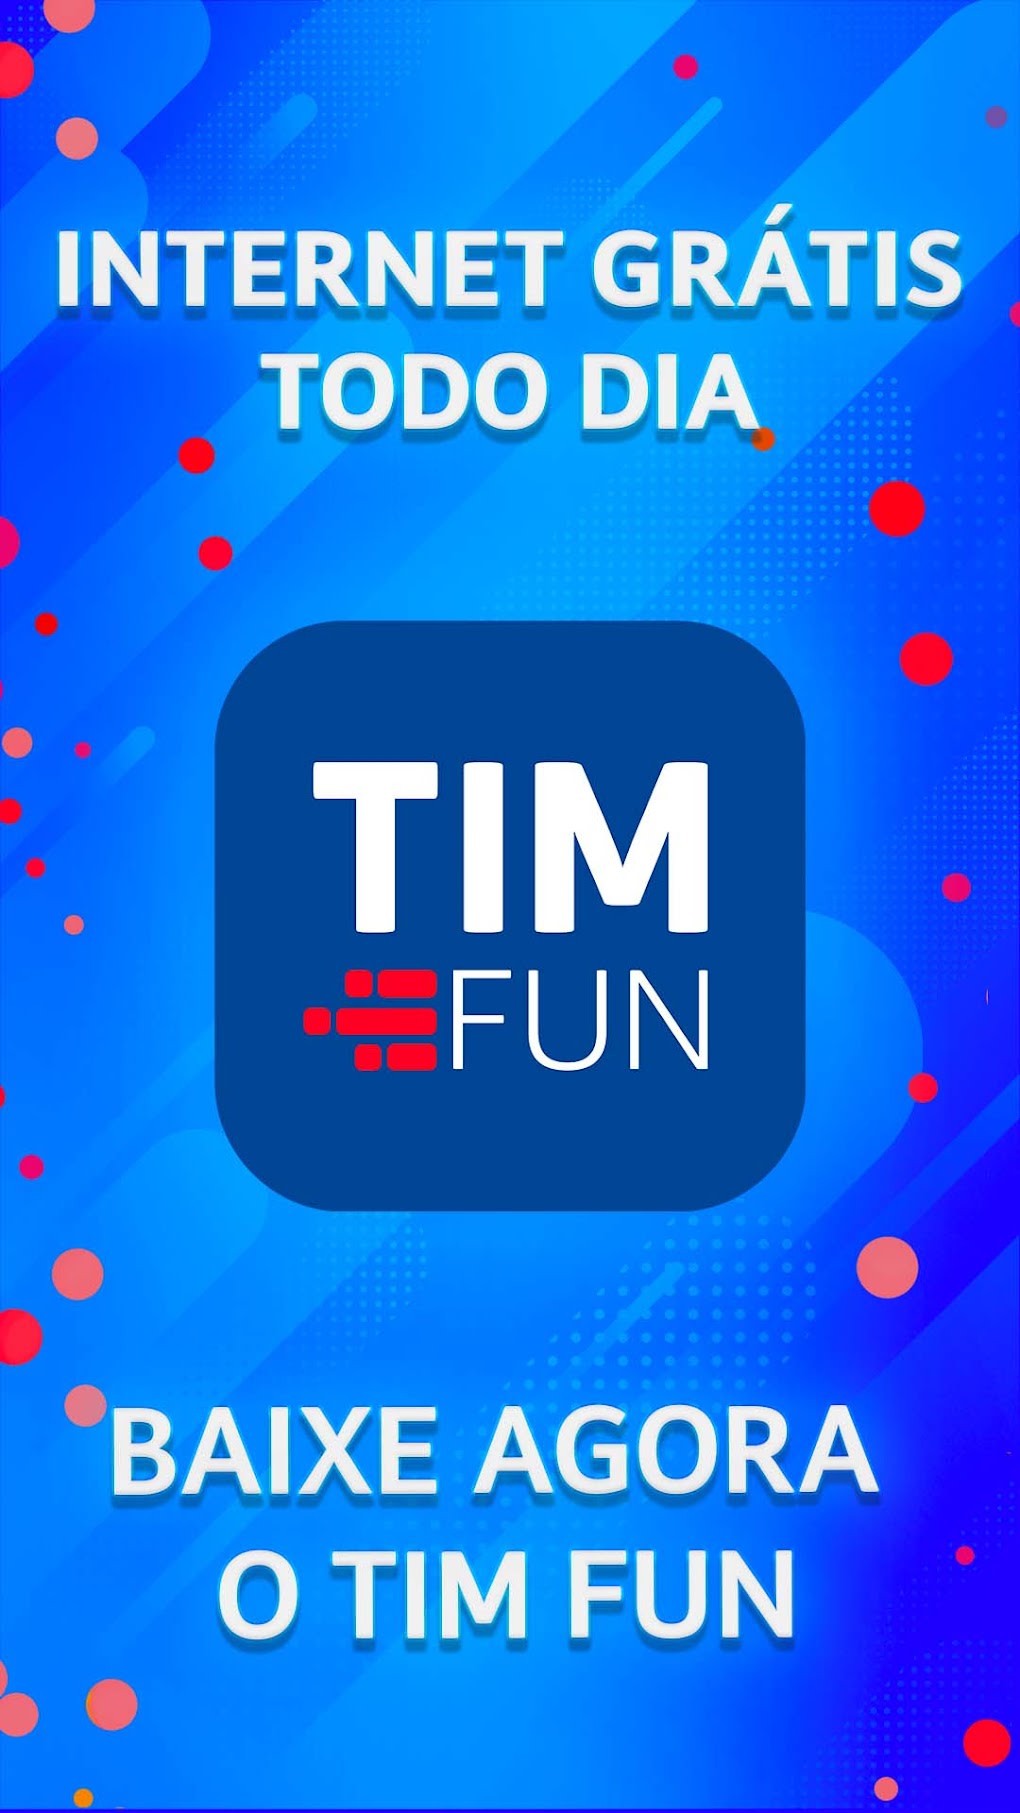 Veja como ganhar até 1 GB de internet usando o app TIM FUN